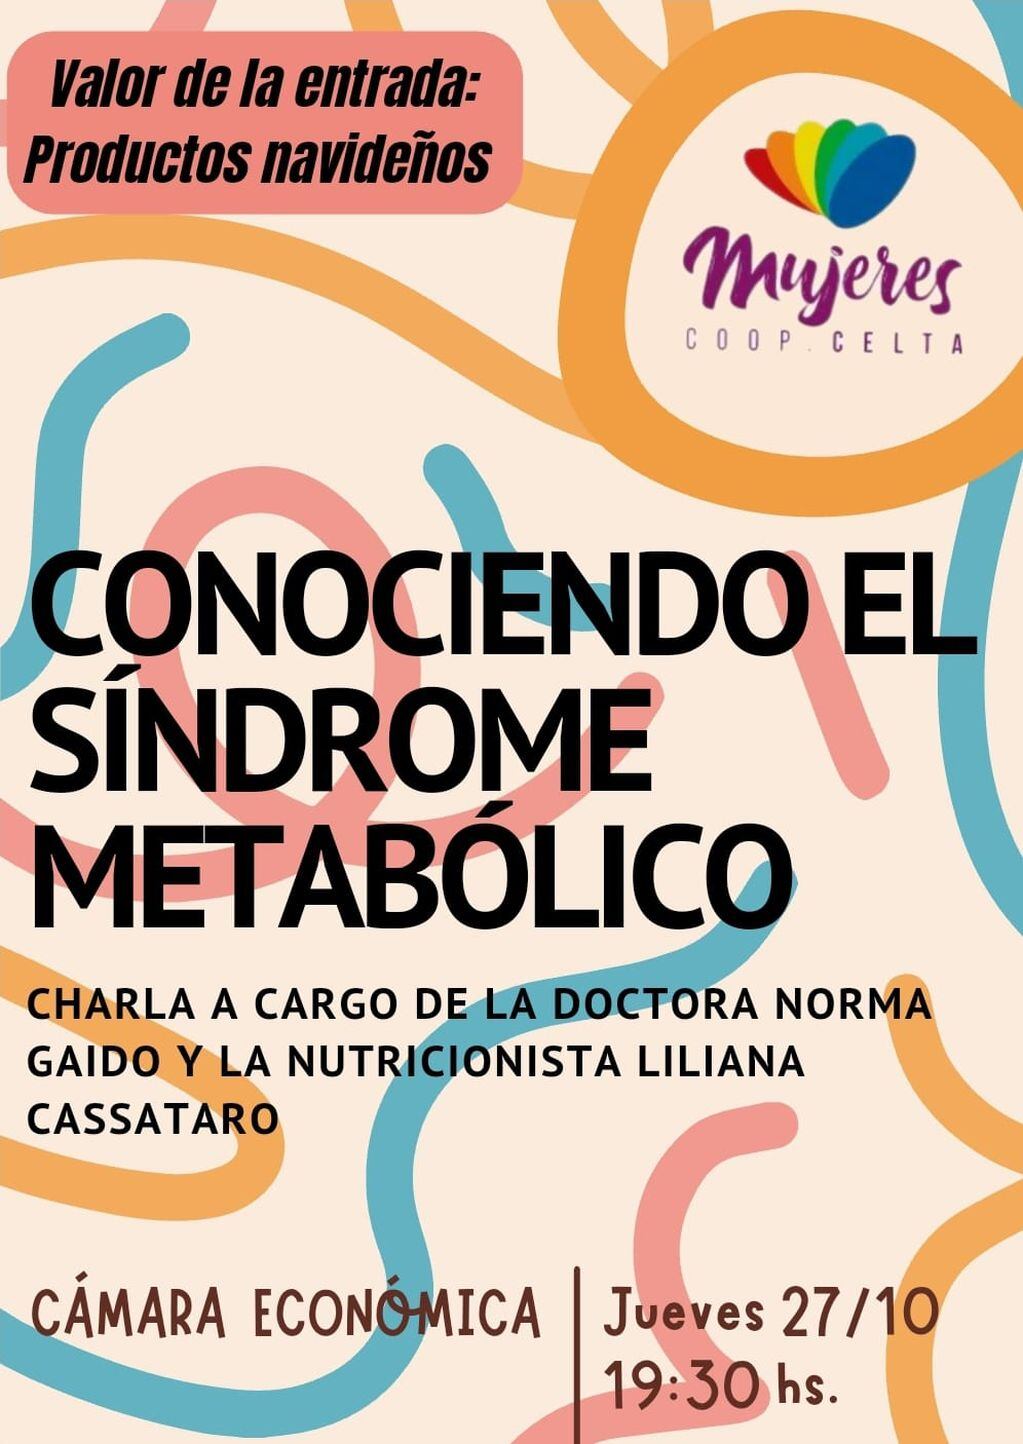 Charla sobre Síndrome Metabólico organizado por las Mujeres Coop en la Cámara Económica de Tres Arroyos